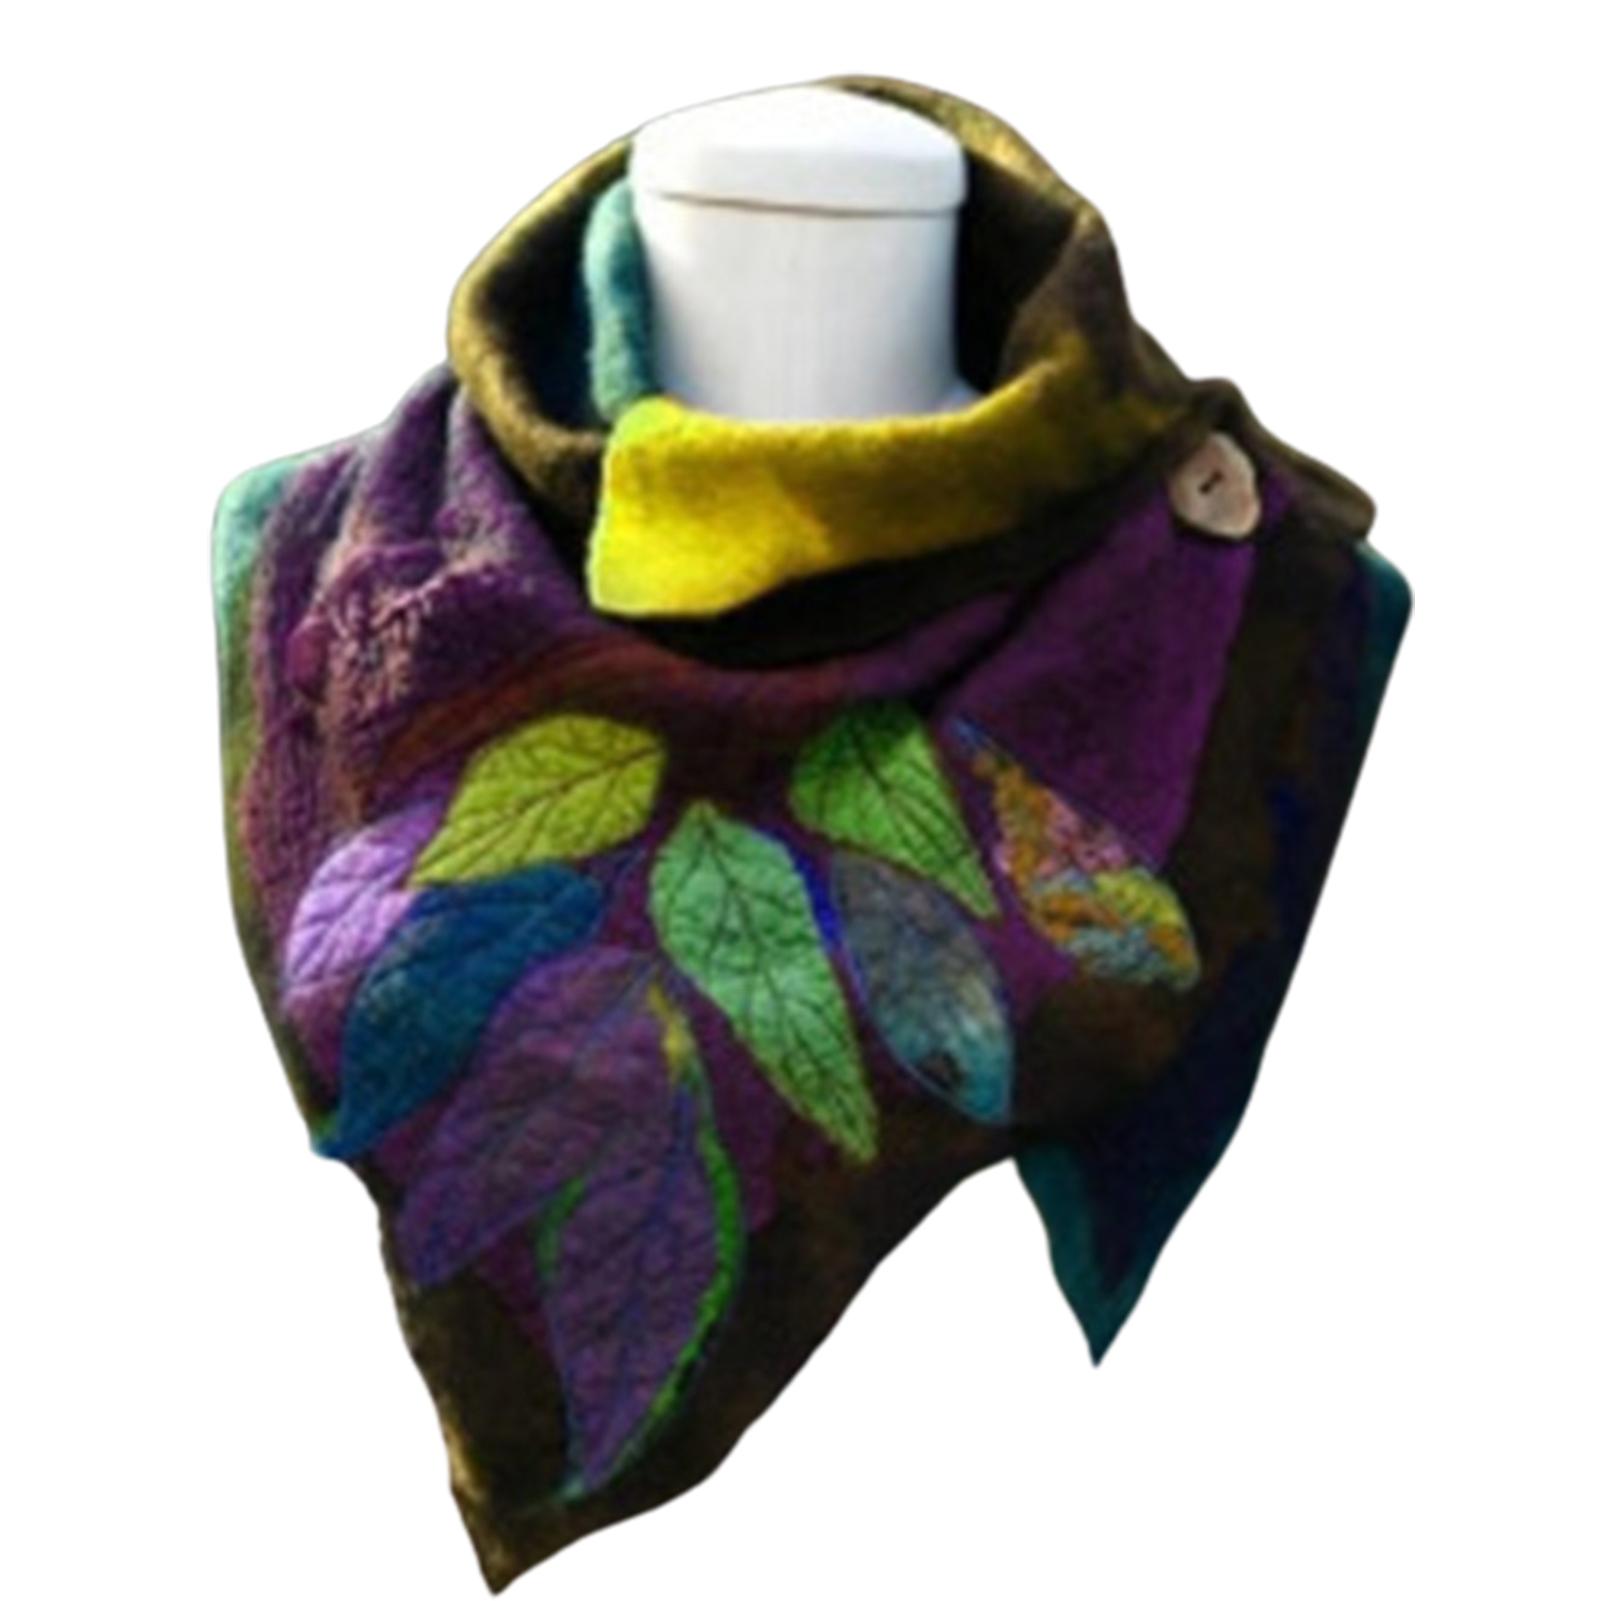 Vintage Sjaal Vrouwen Herfst Winter Leaf Print Soft Wrap Onregelmatige Sjaal Knop Warme Sjaal Sjaal Multifunctionele